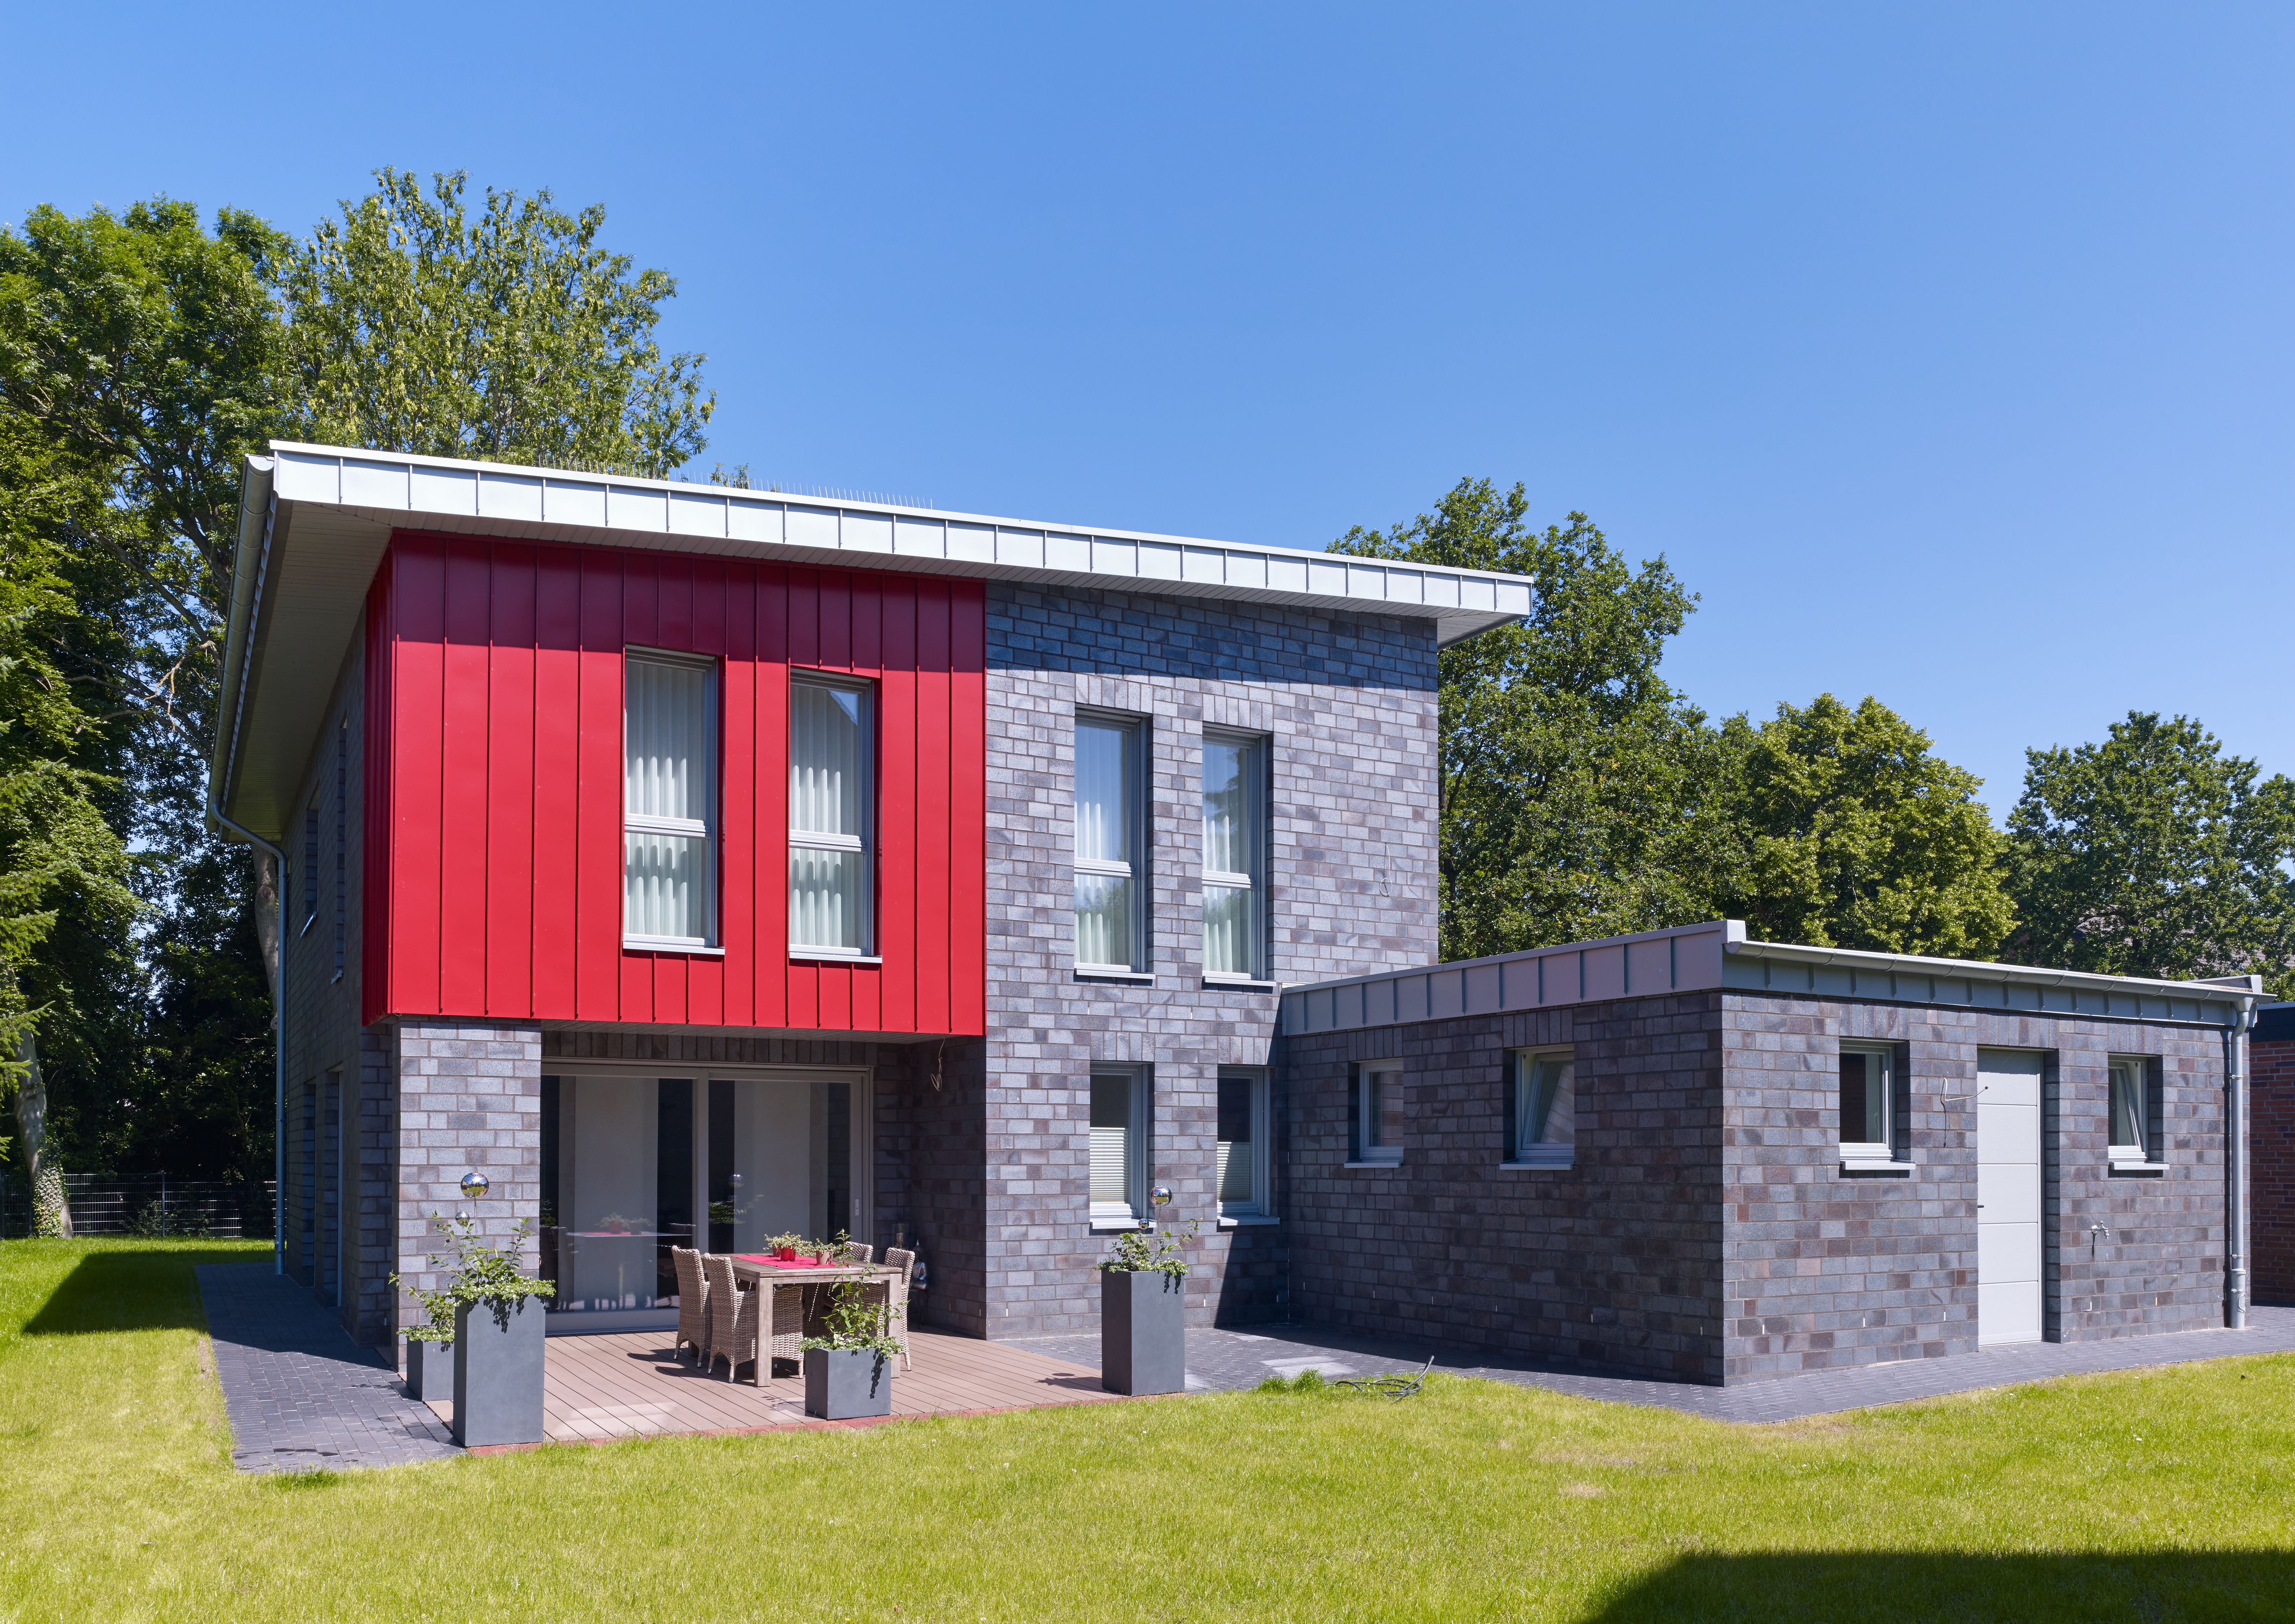 Wohnhaus mit Zink in Rot und Dachrand in Blaugrau